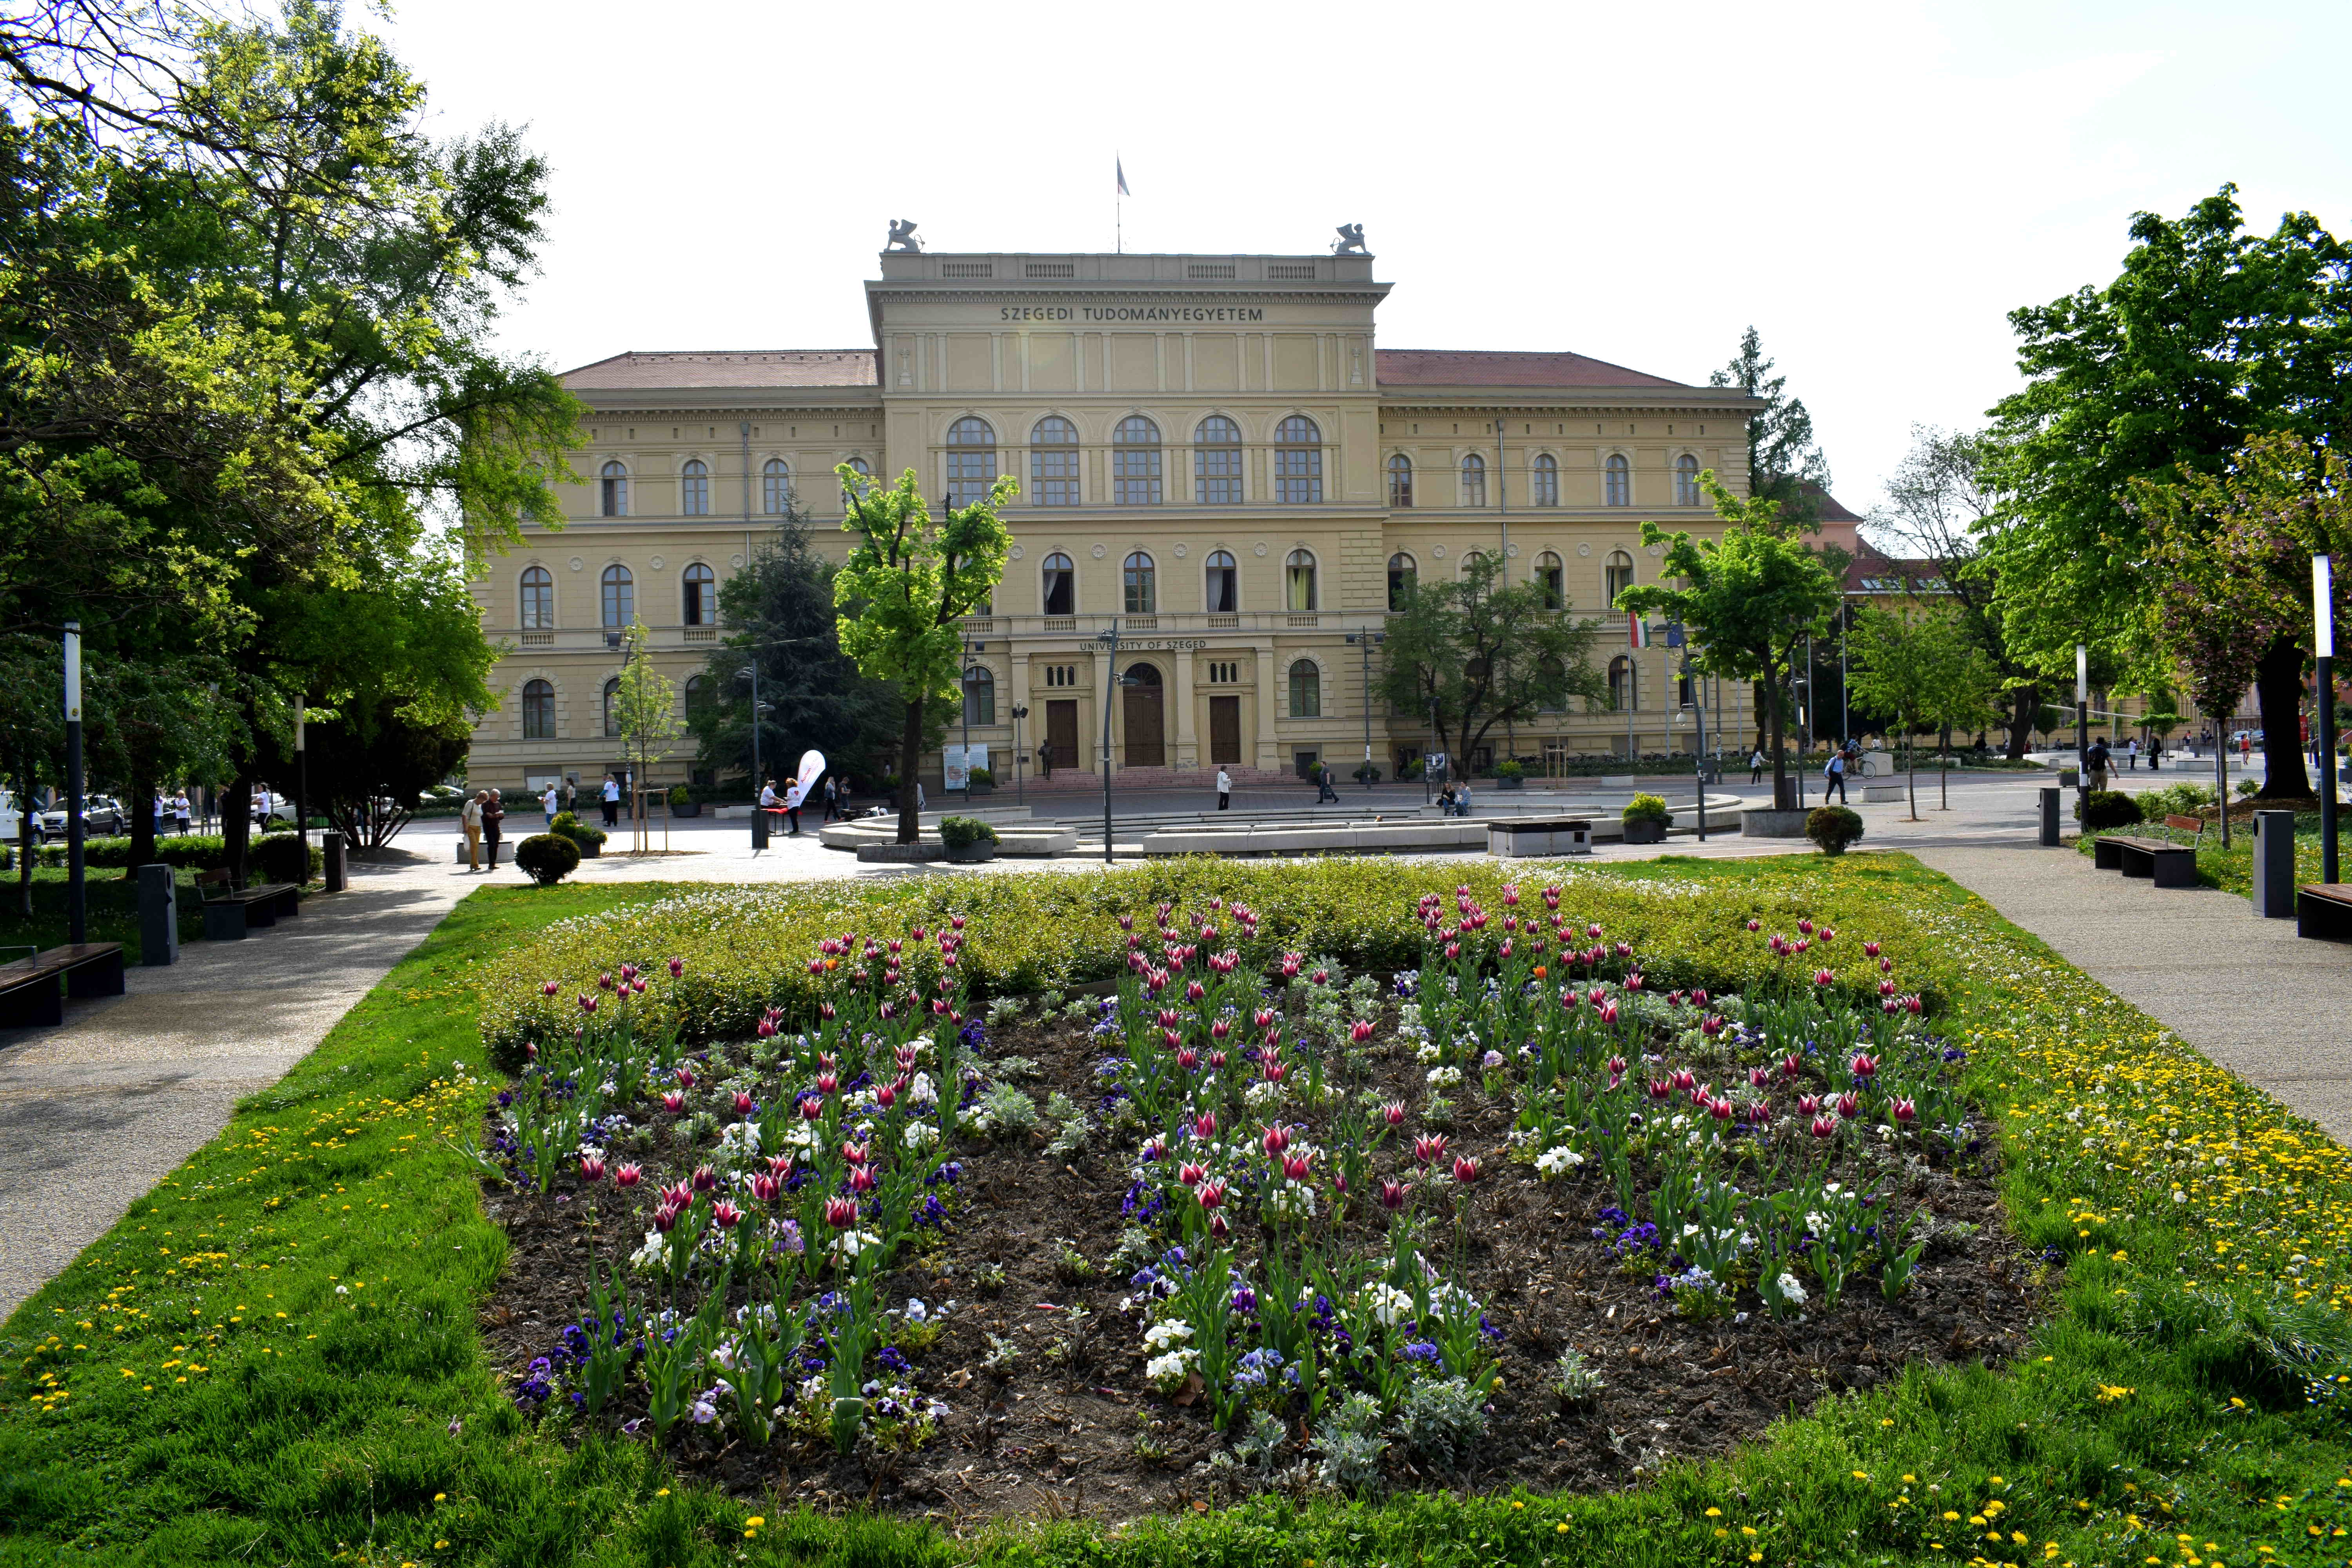 University of Szeged, Hungary